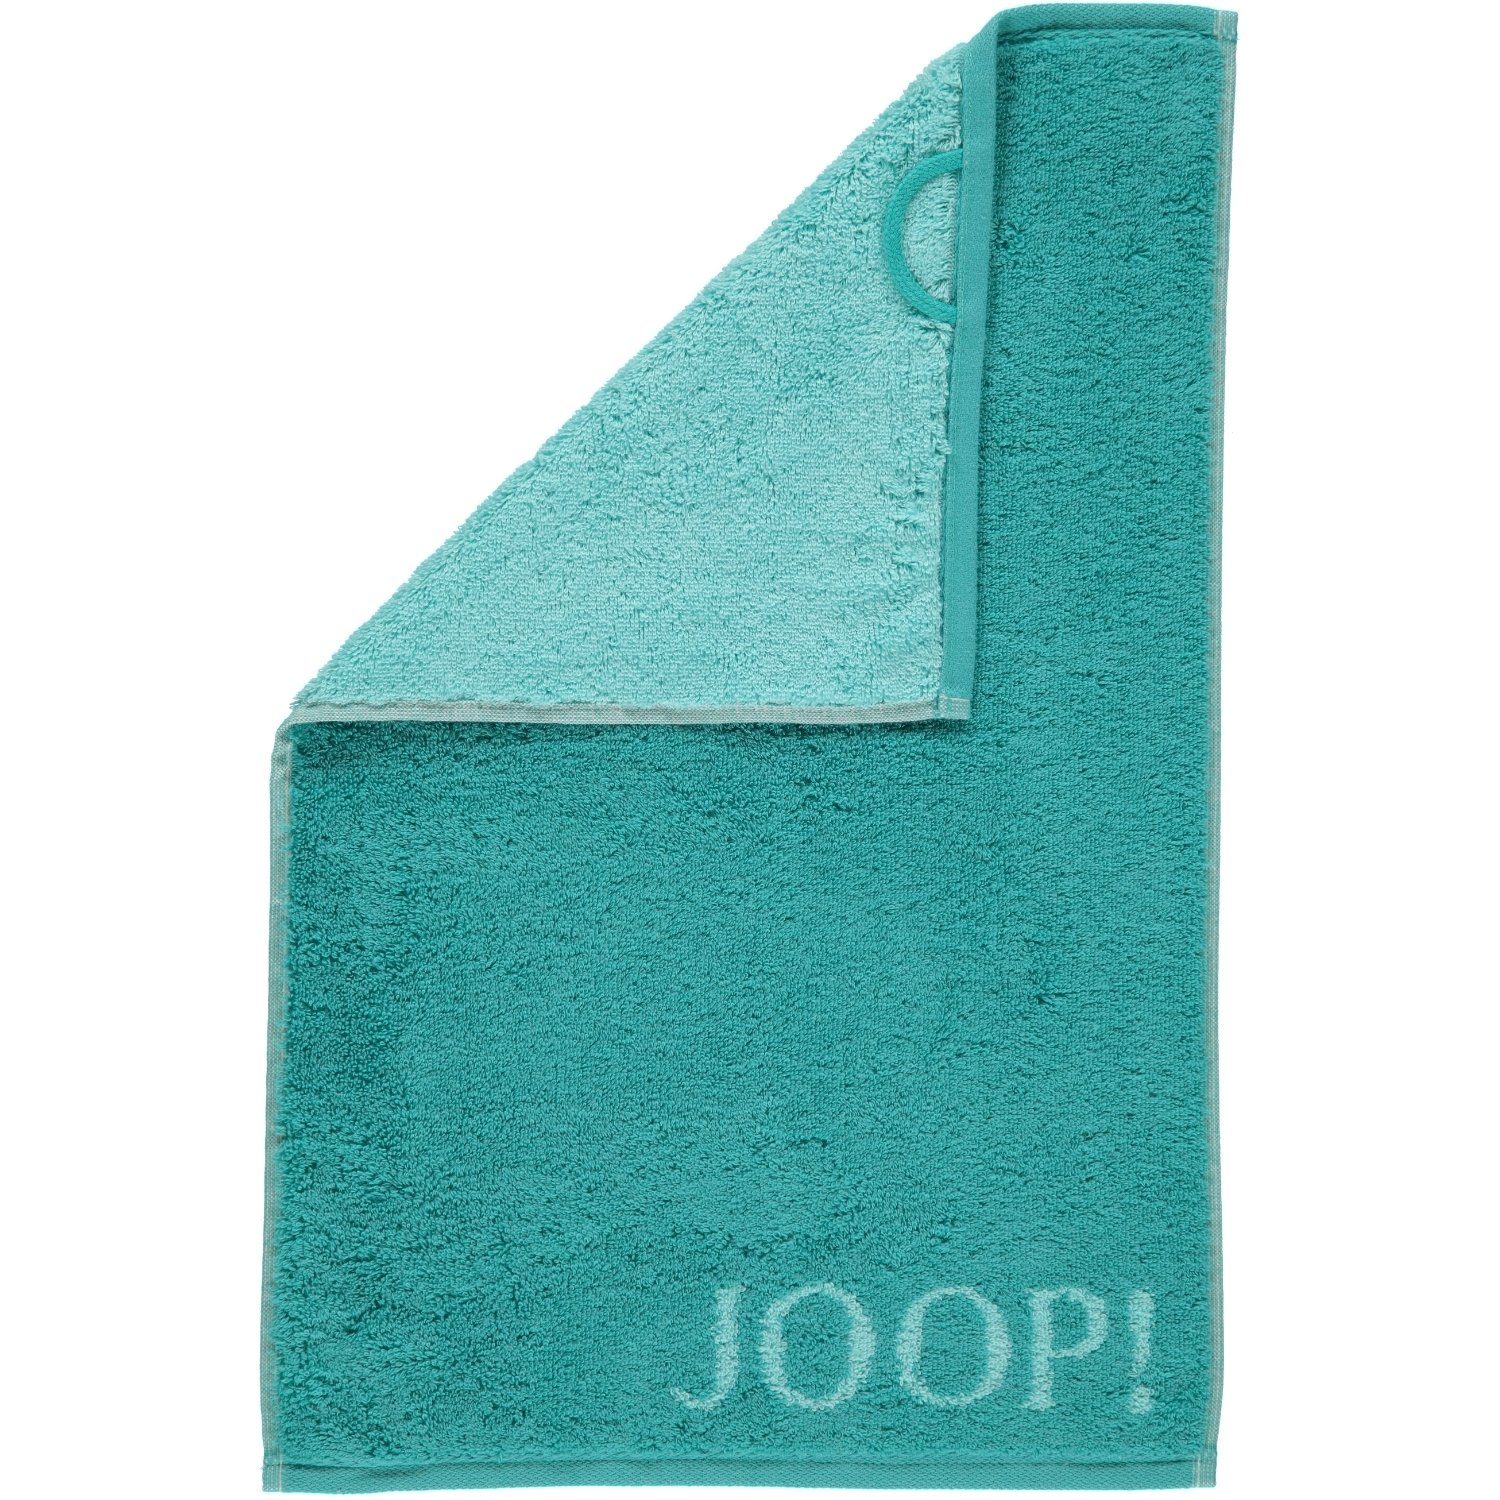 Joop! Handtücher Classic Doubleface 1600, 40 türkis - 100% Baumwolle